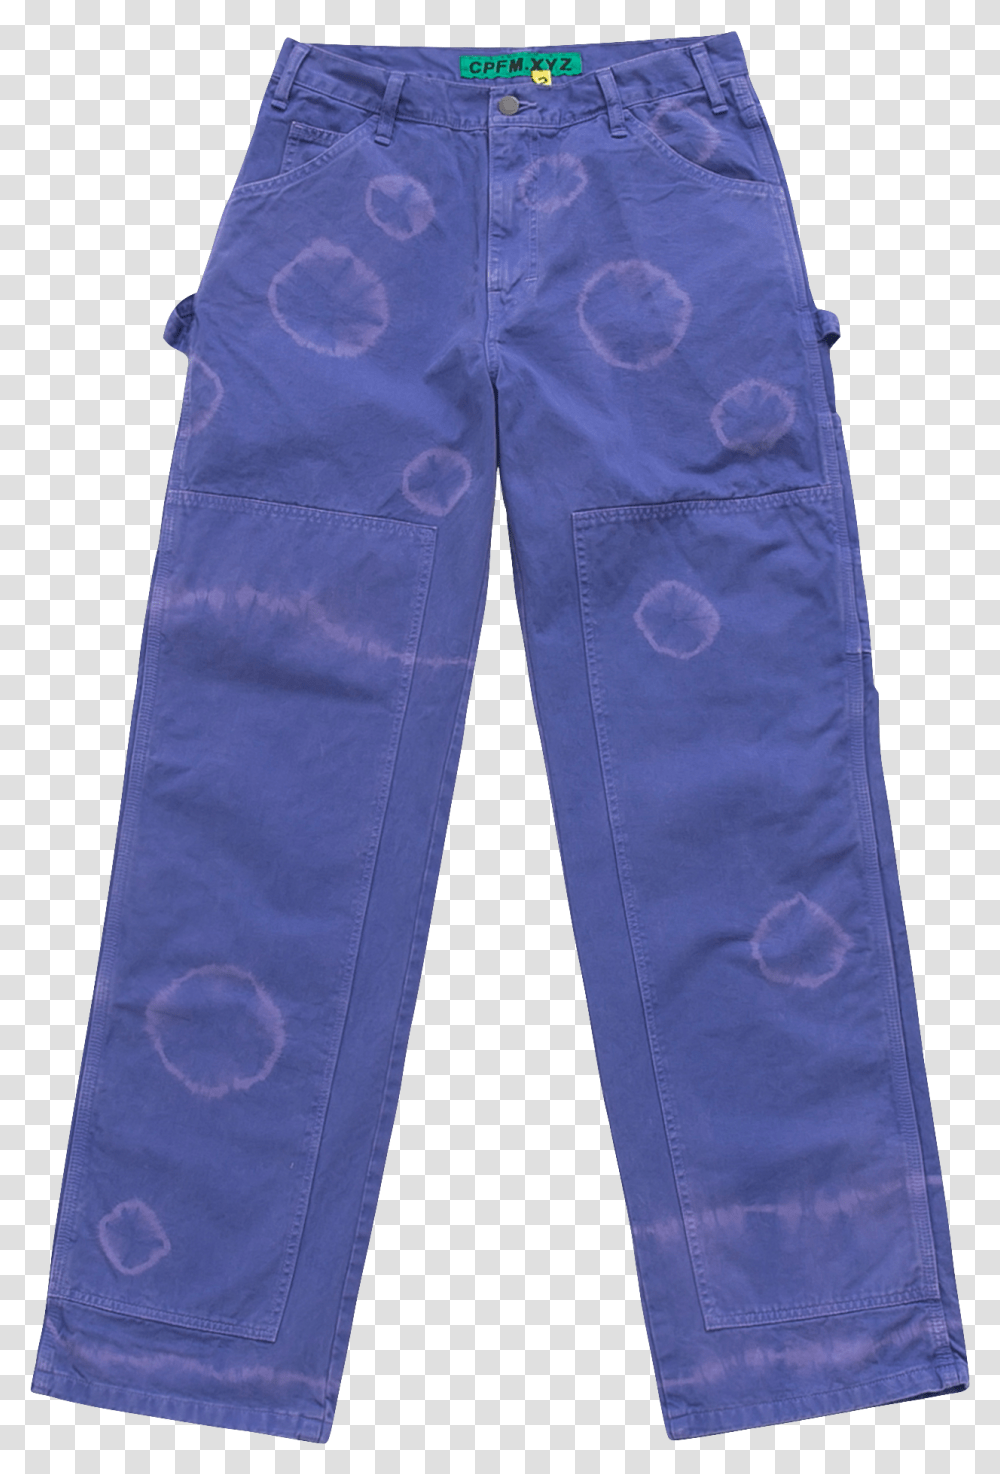 Cactus Plant Flea Market Pants, Apparel, Jeans, Denim Transparent Png